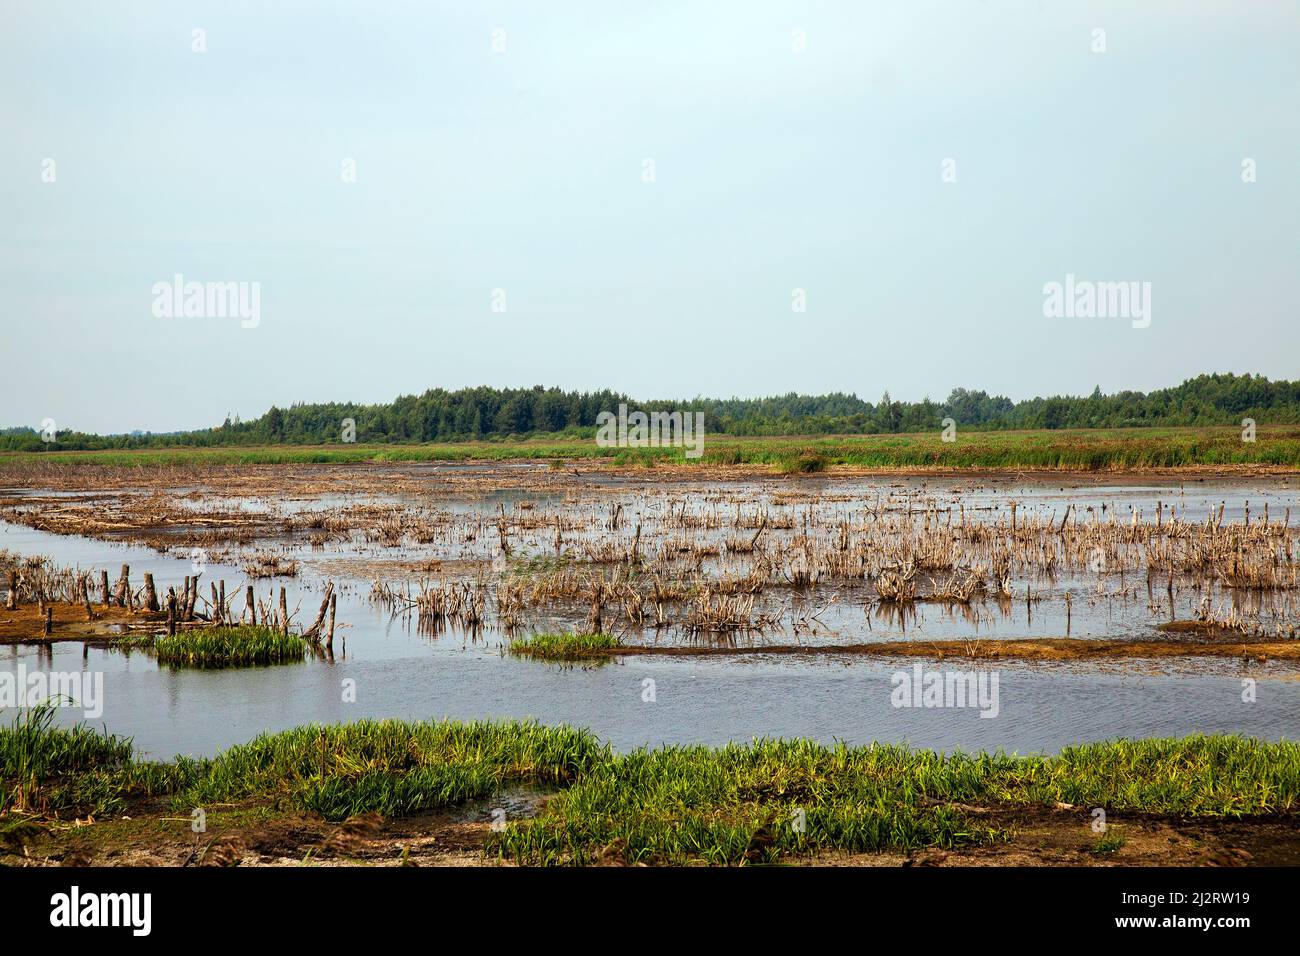 Ein Sumpf überflutet mit Wasser mit unterschiedlicher Vegetation, Natur mit verschiedenen Arten von Vegetation in einem kleinen Sumpf Stockfoto